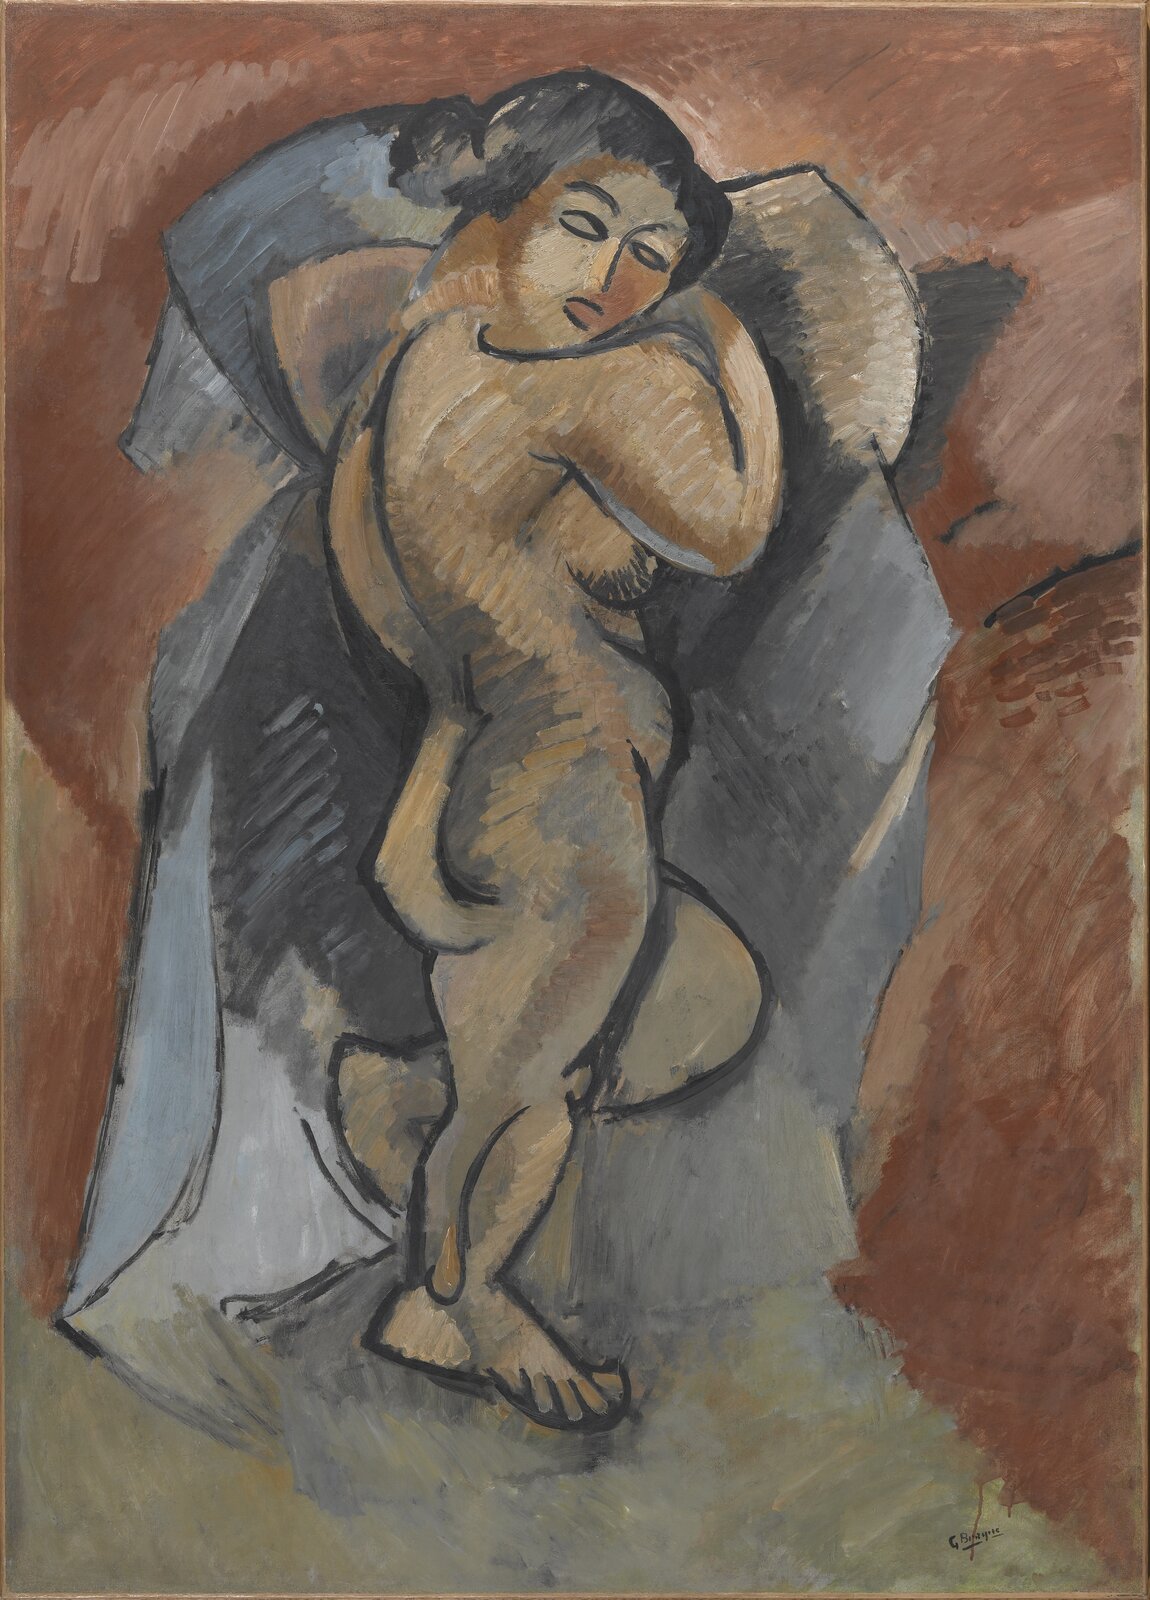 Ilustracja przedstawia obraz Georgesa Braque'a „Wielki akt”. Ukazuje nagą kobietę leżącą na łóżku, ujętą w widoku z góry. Postać ułożona jest na lewym boku, prawą rękę ma pod głową, lewa jej noga jest ugięta. Głowę ma odwróconą w stronę widza. Ciało kobiety, wypełnione żółtym kolorem z podkreślonym za pomocą niebieskich i szarych plam światłocieniem, obrysowane jest wyrazistym, czarnym konturem. Pościel na łóżku to zgeometryzowane, niebieskoszare płaszczyzny. Tło dzieła jest utrzymane w ciepłych, pomarańczowożółtych barwach.